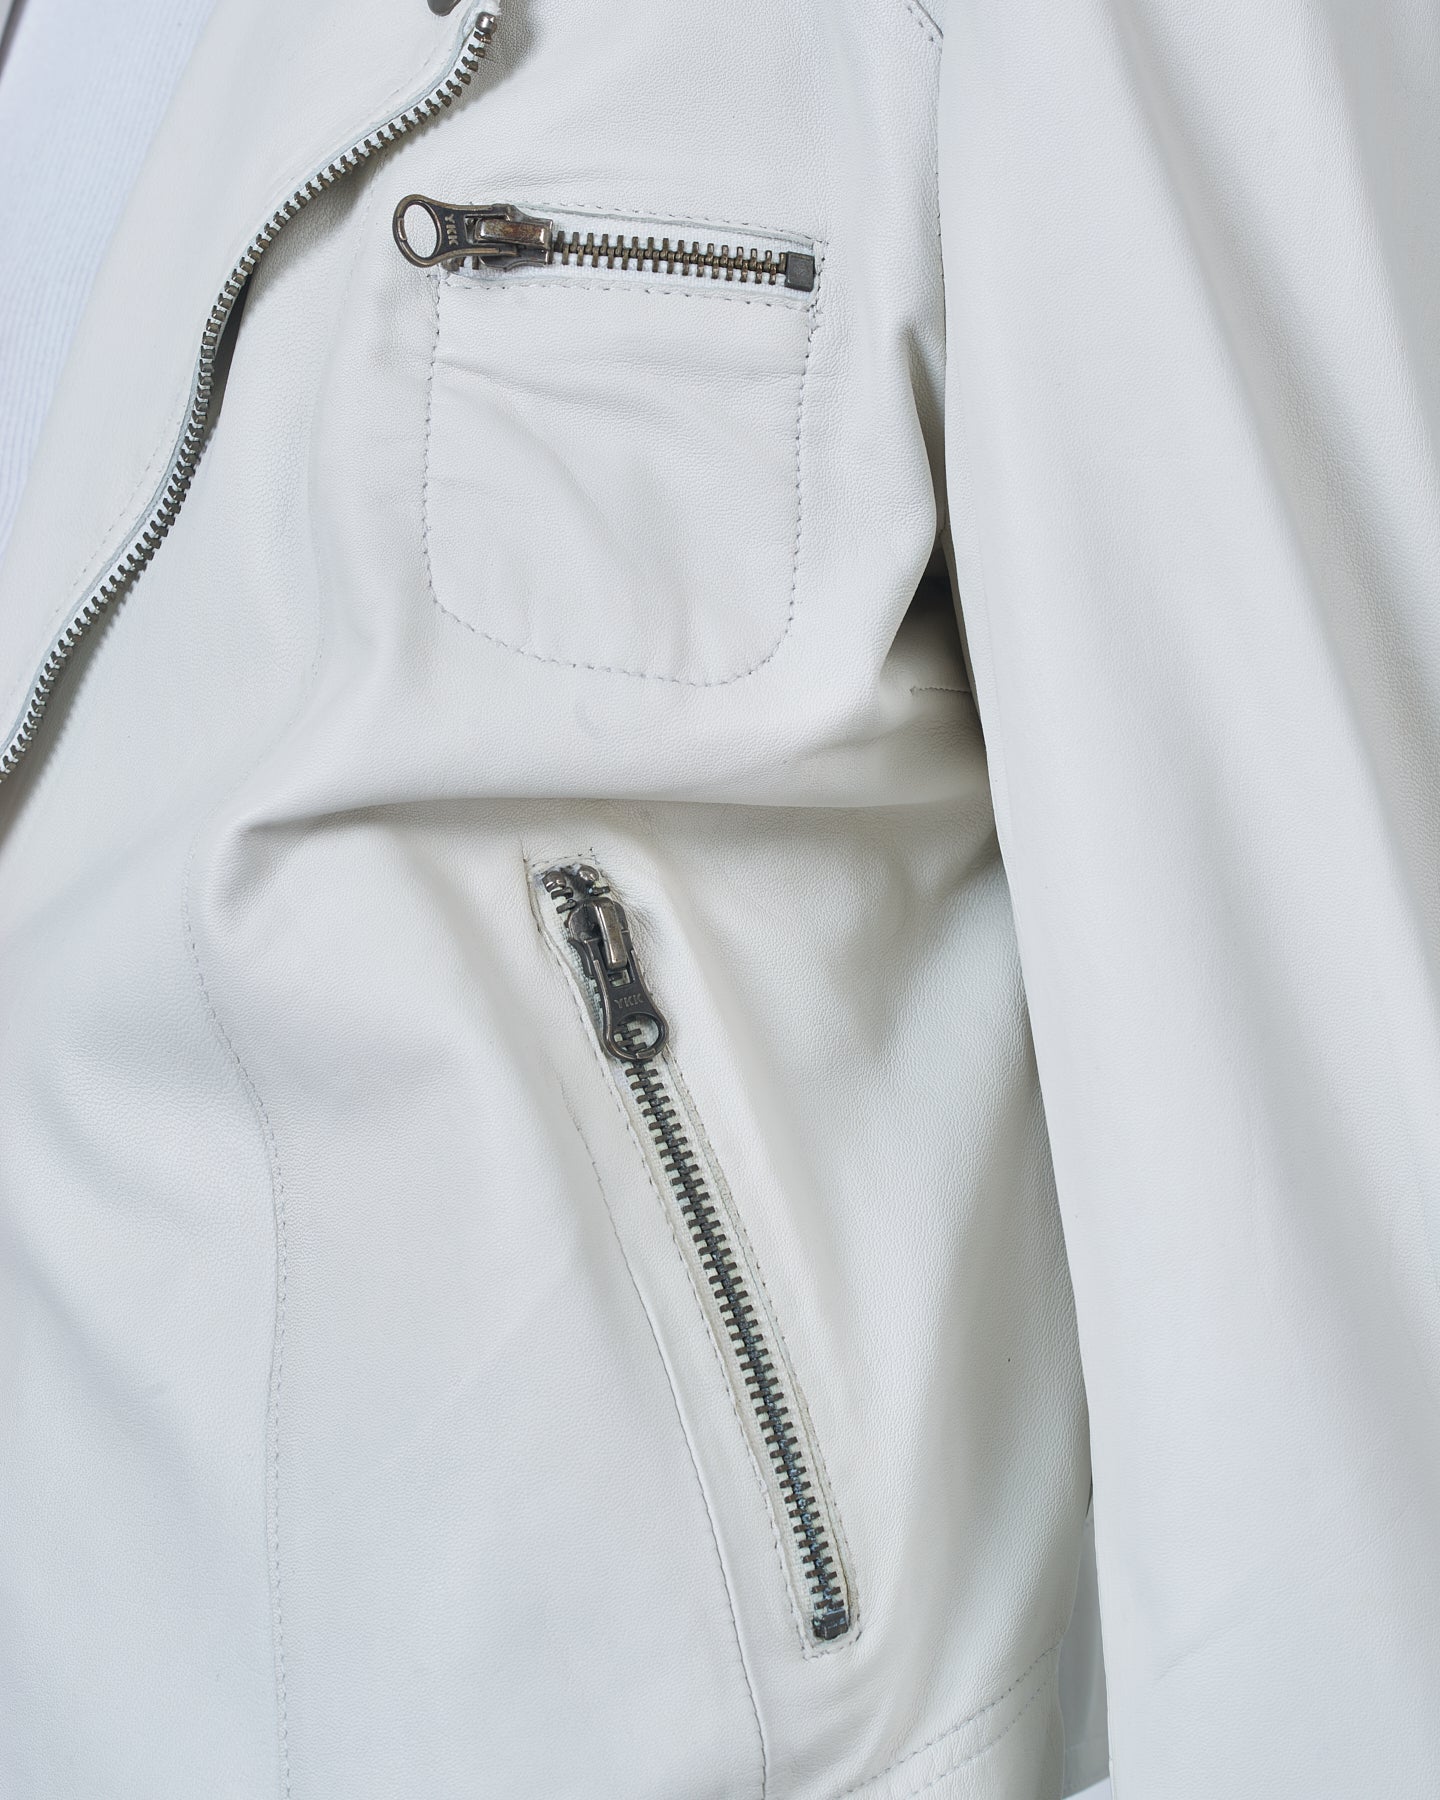 Jakett Josey Vintage Leather Jacket – White jakett